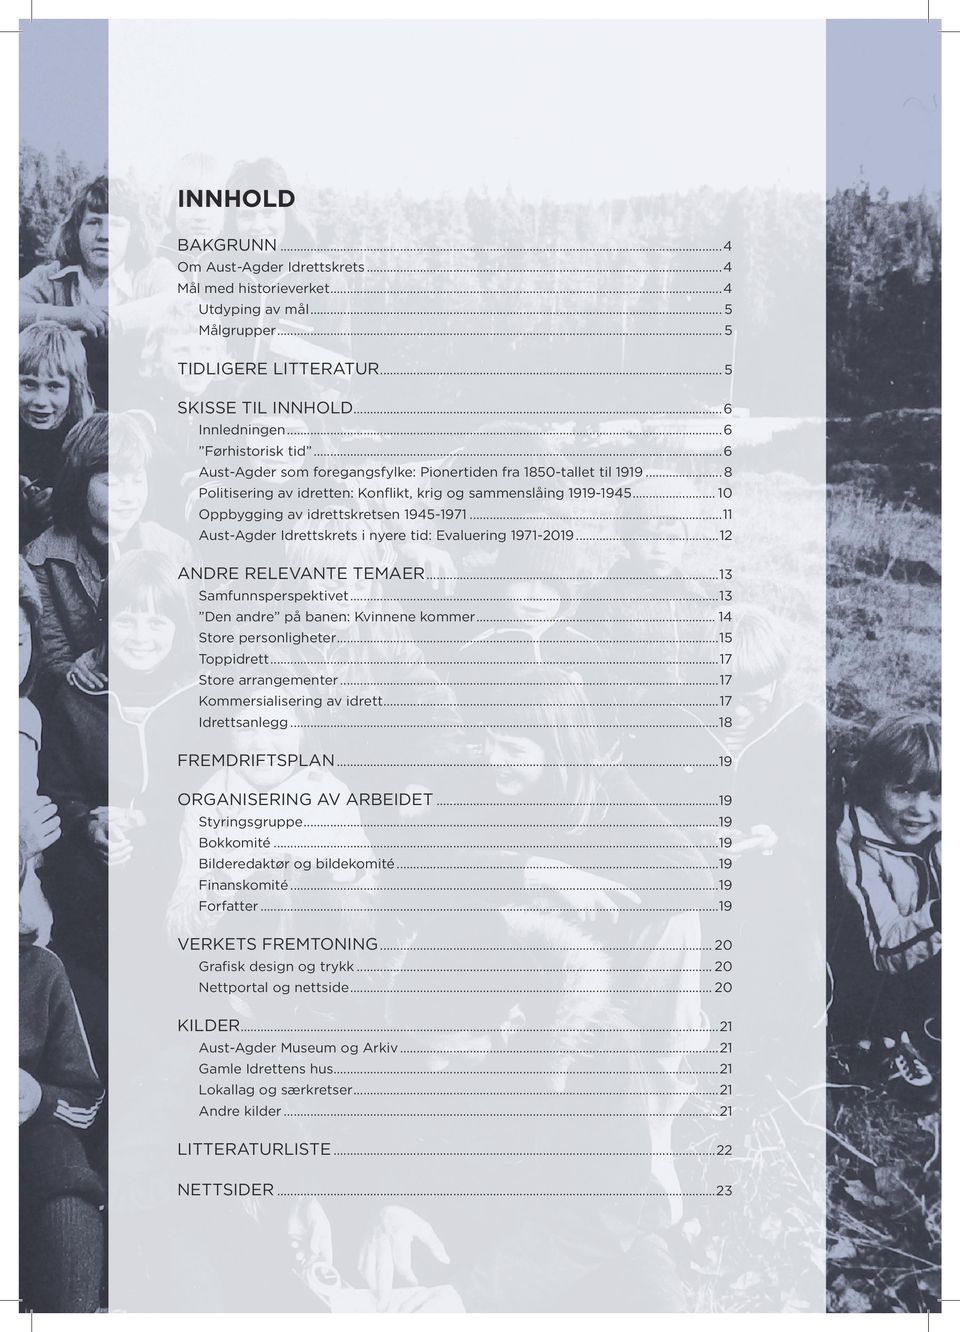 ..11 Aust-Agder Idrettskrets i nyere tid: Evaluering 1971-2019...12 ANDRE RELEVANTE TEMAER...13 Samfunnsperspektivet...13 Den andre på banen: Kvinnene kommer... 14 Store personligheter...15 Toppidrett.